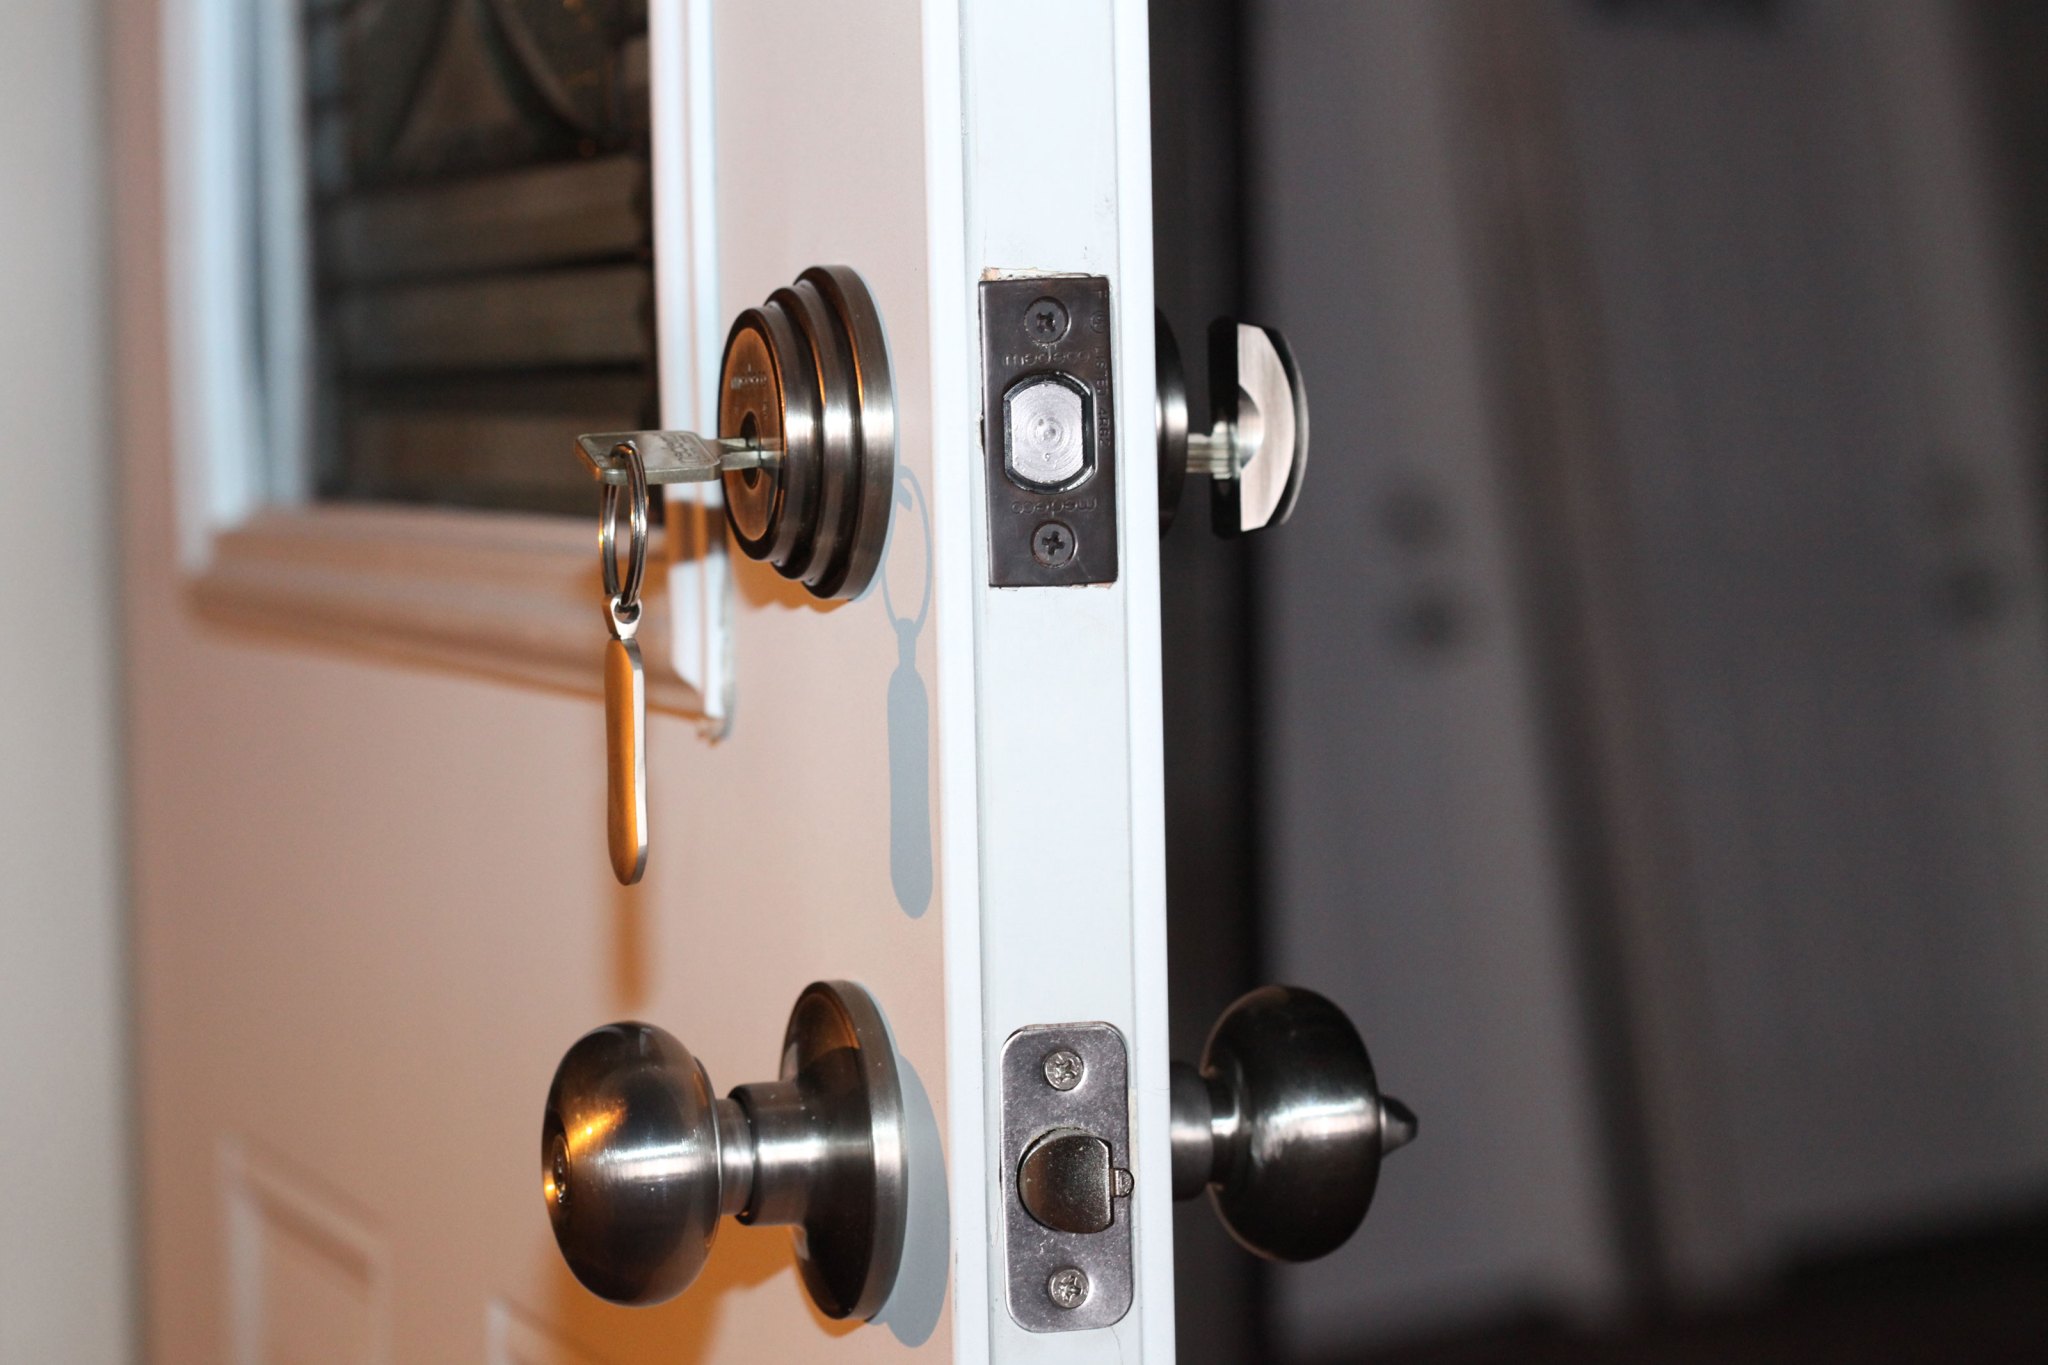 Door Locks, Smart Door Locks, Digital Locks for Doors